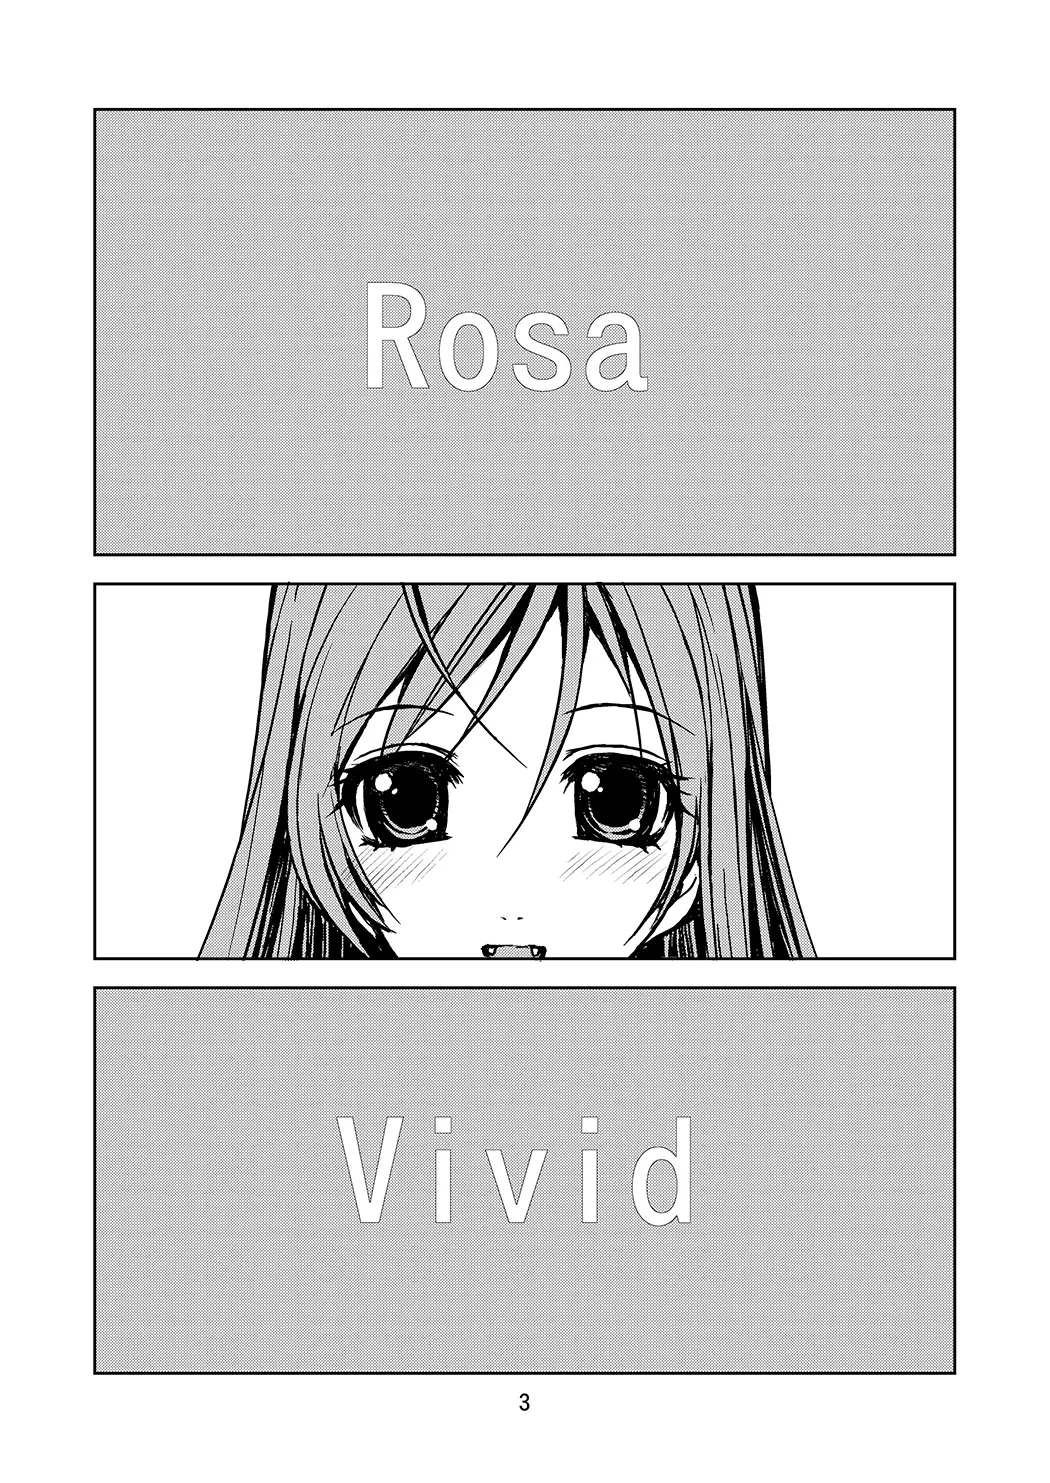 RV - Rosa Viva全集P2